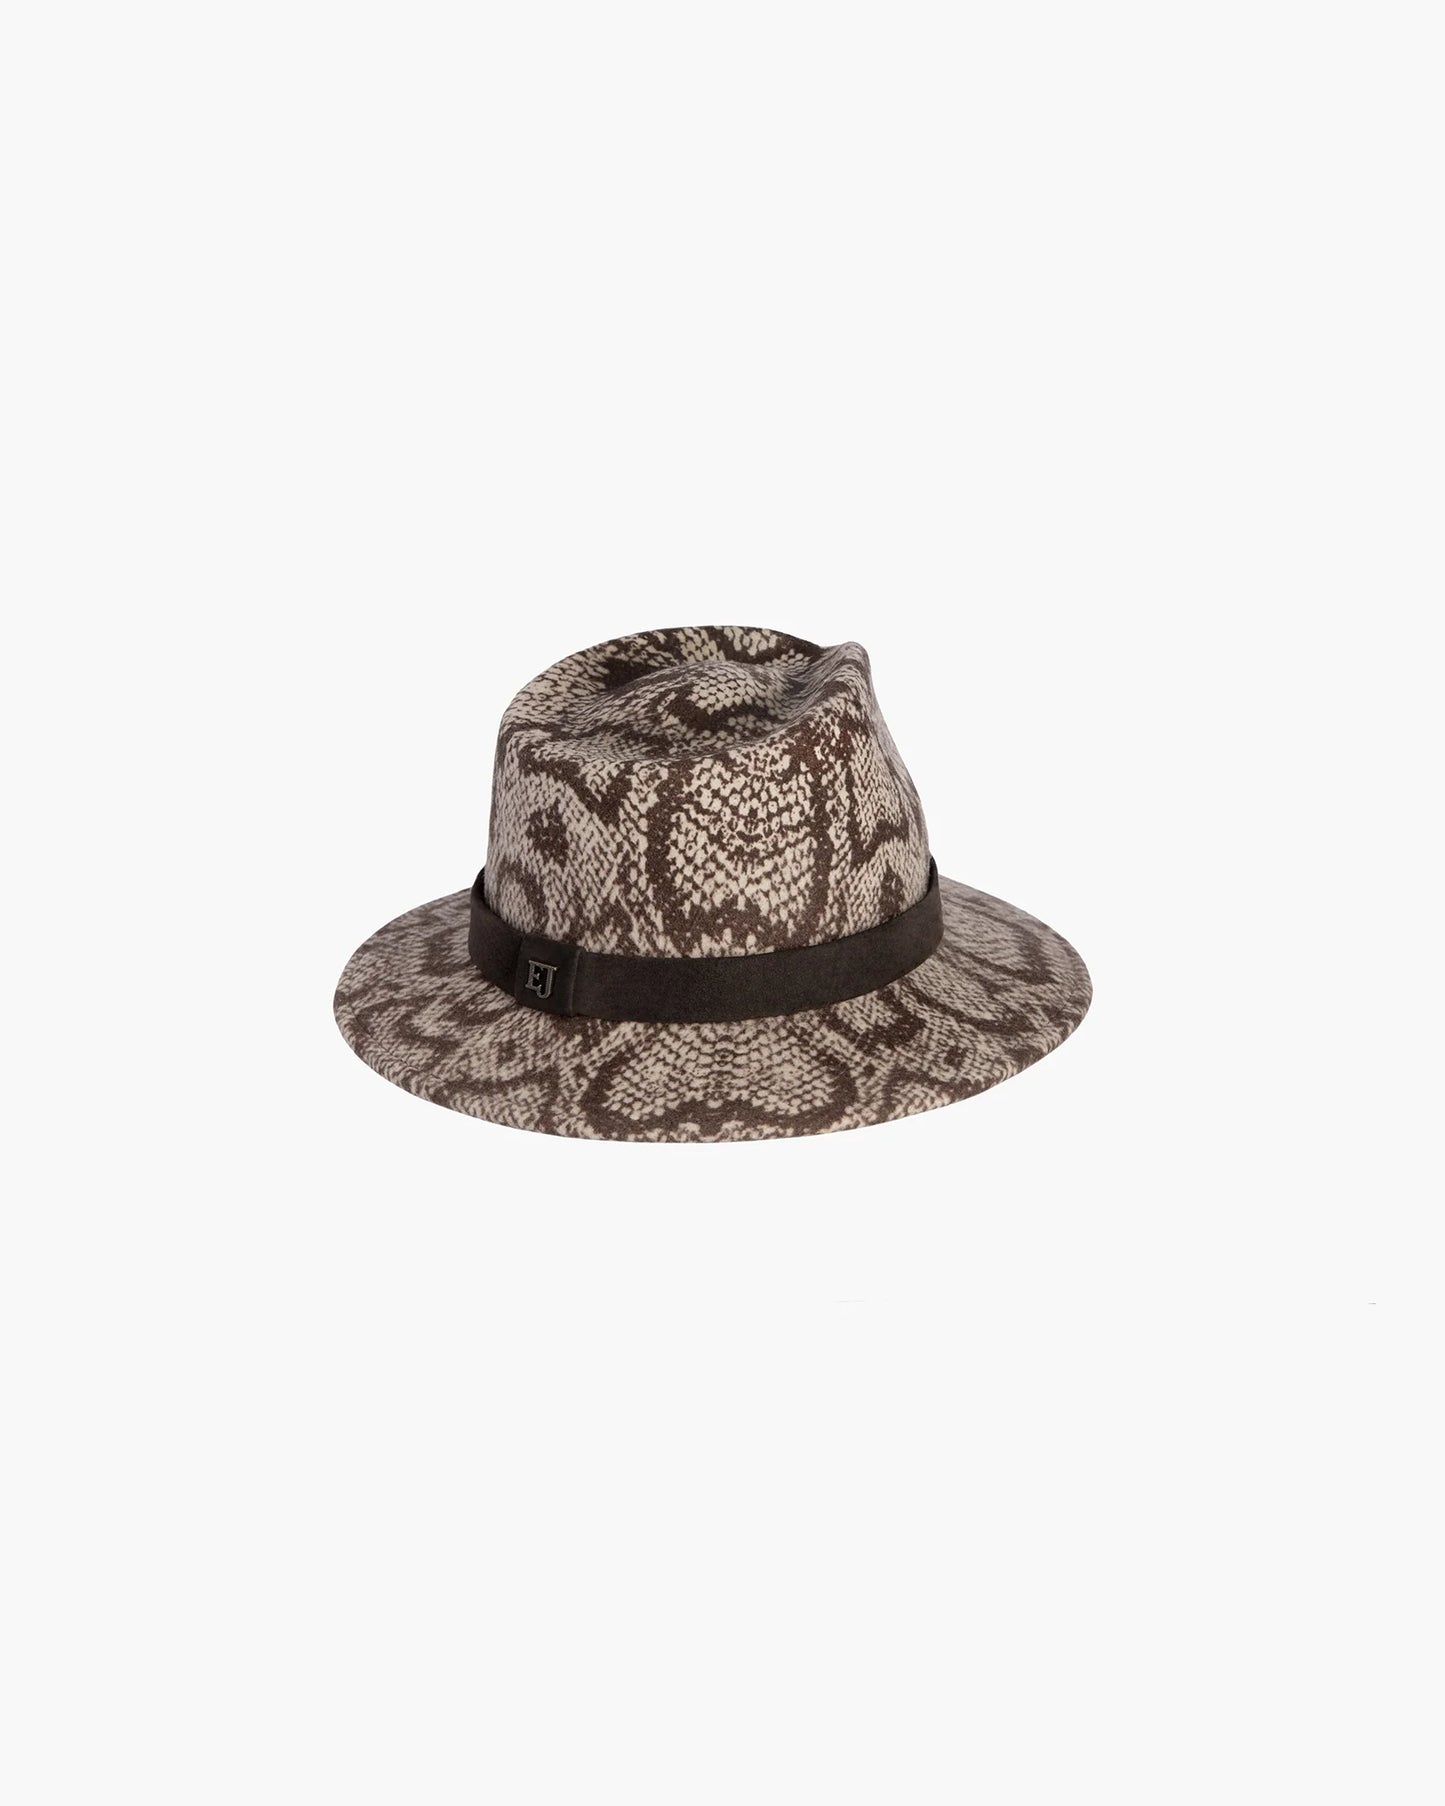 MS Cool Wool Felt Fedora Hat